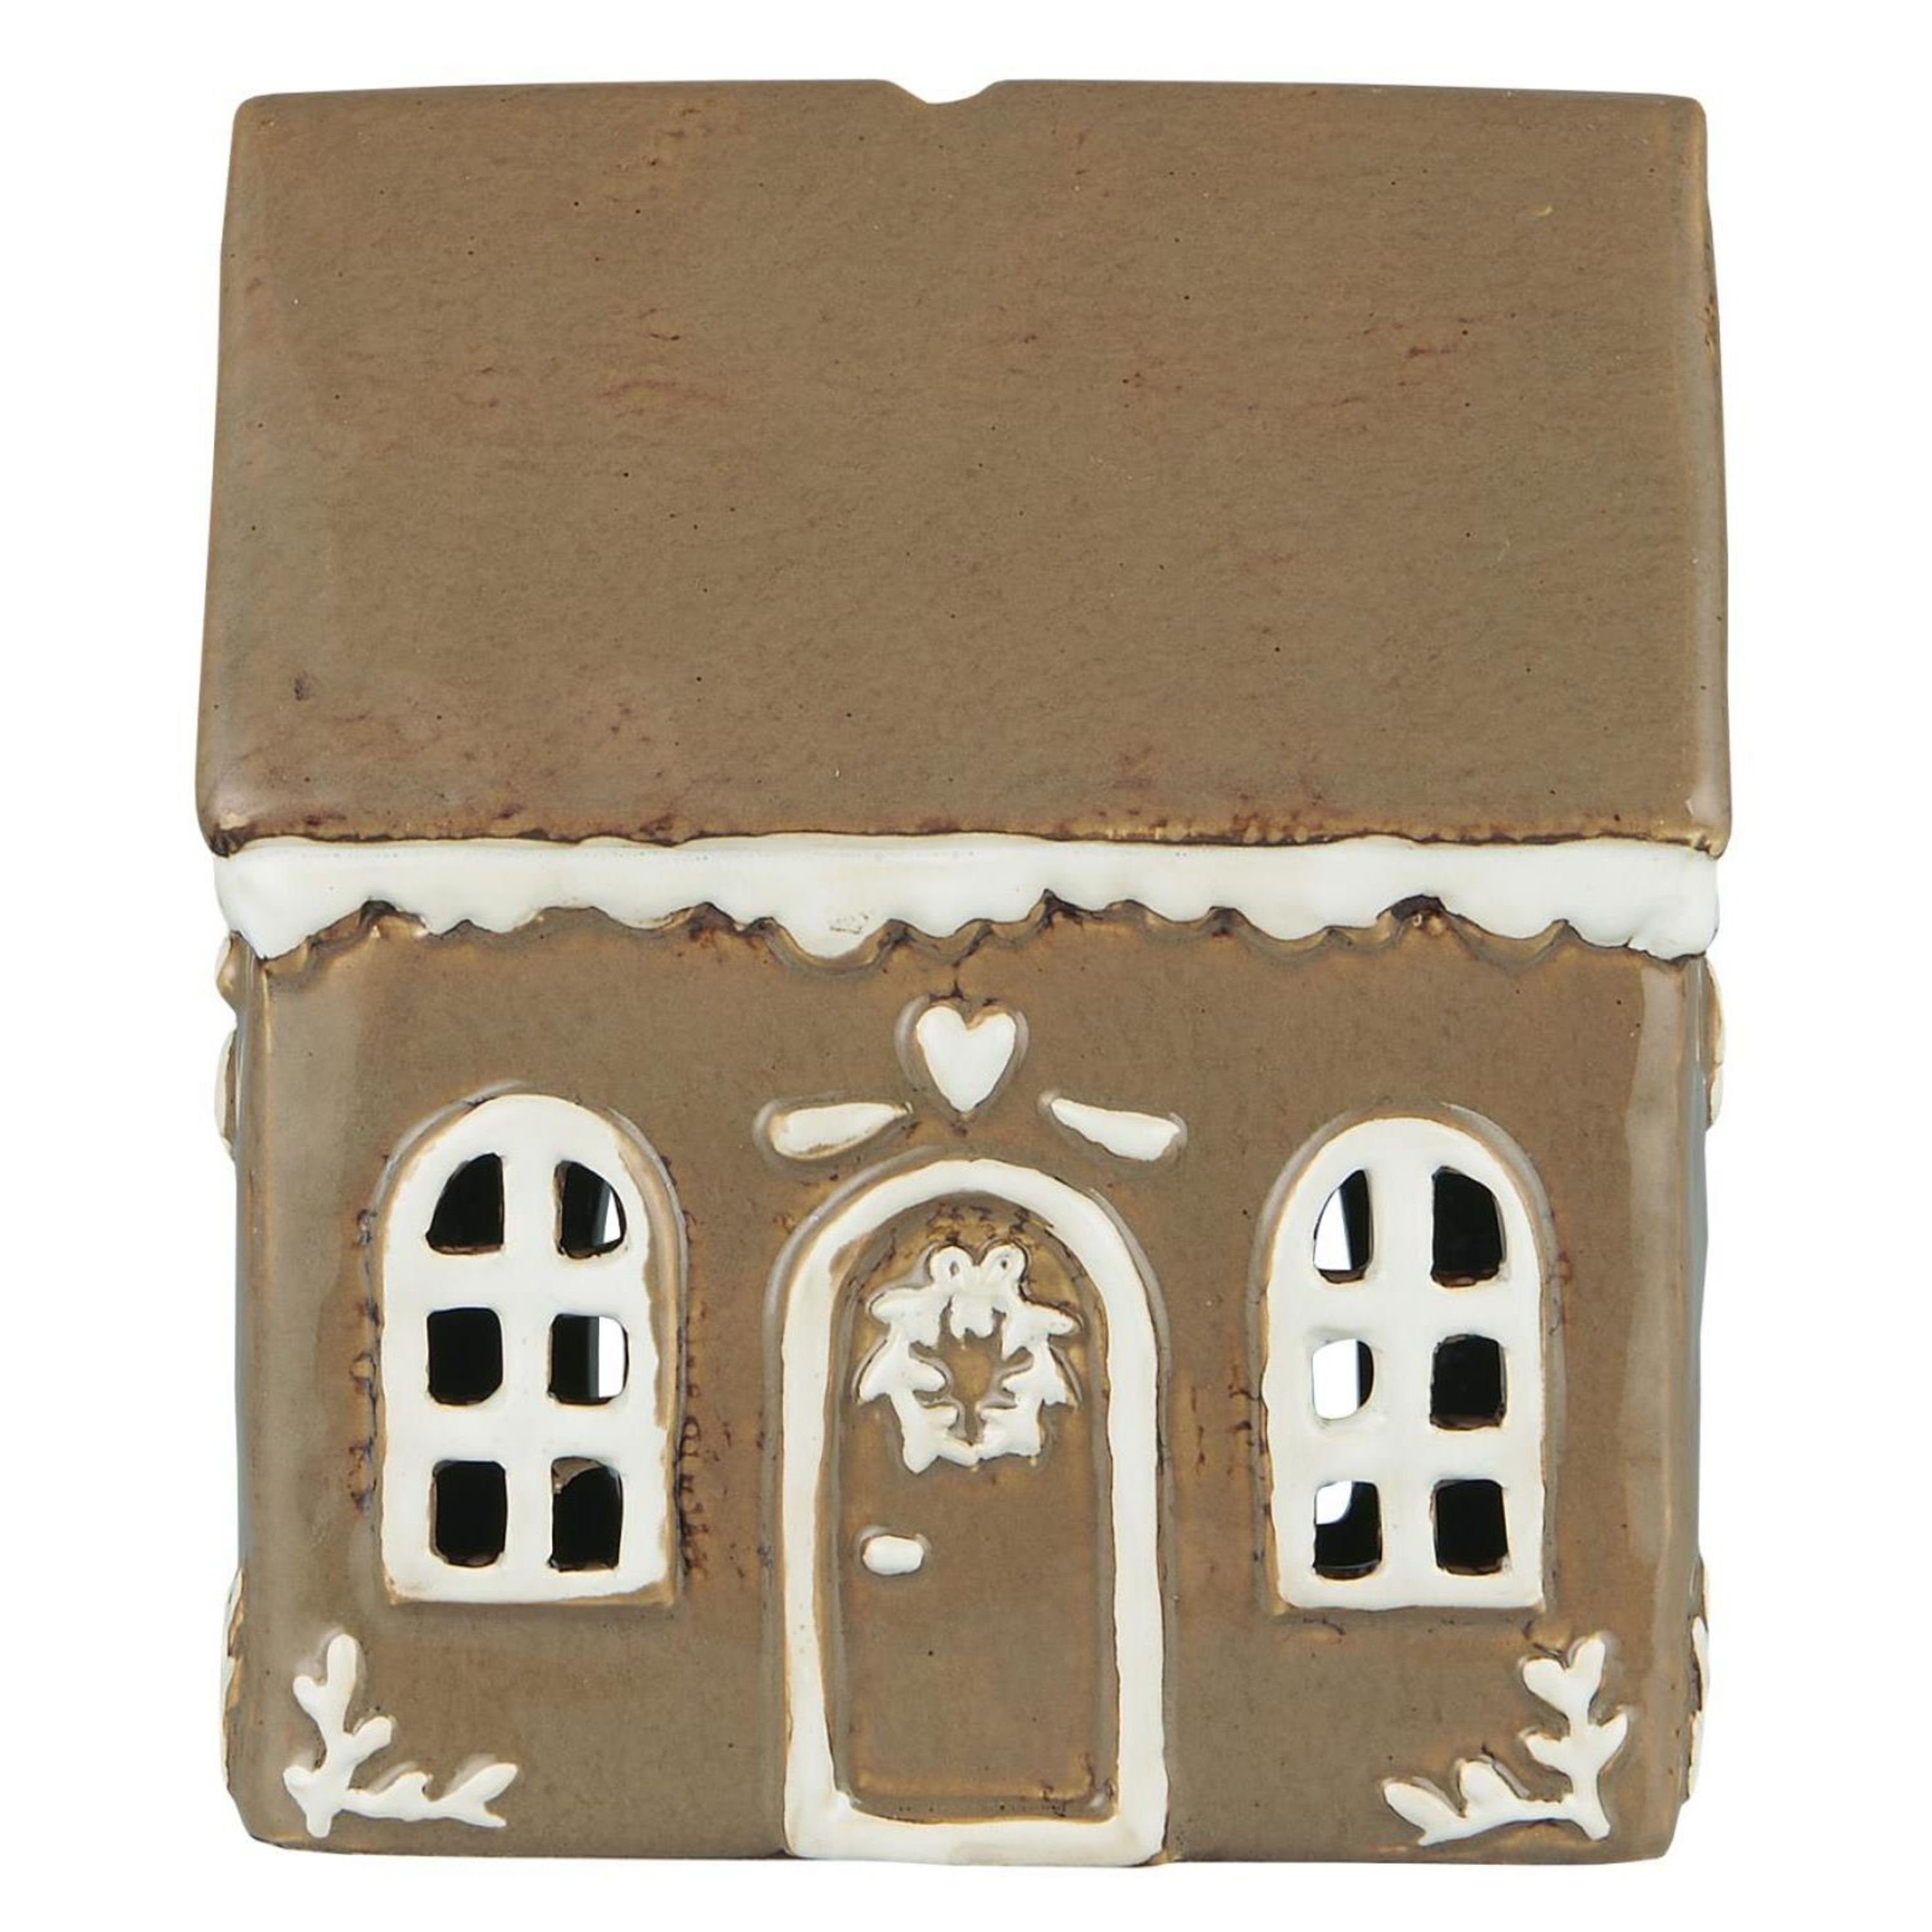 Diese Woche sehr willkommen Ib Laursen Kandelaber, Teelichthaus im Gingerbread Türkranz skandinavischen Stil